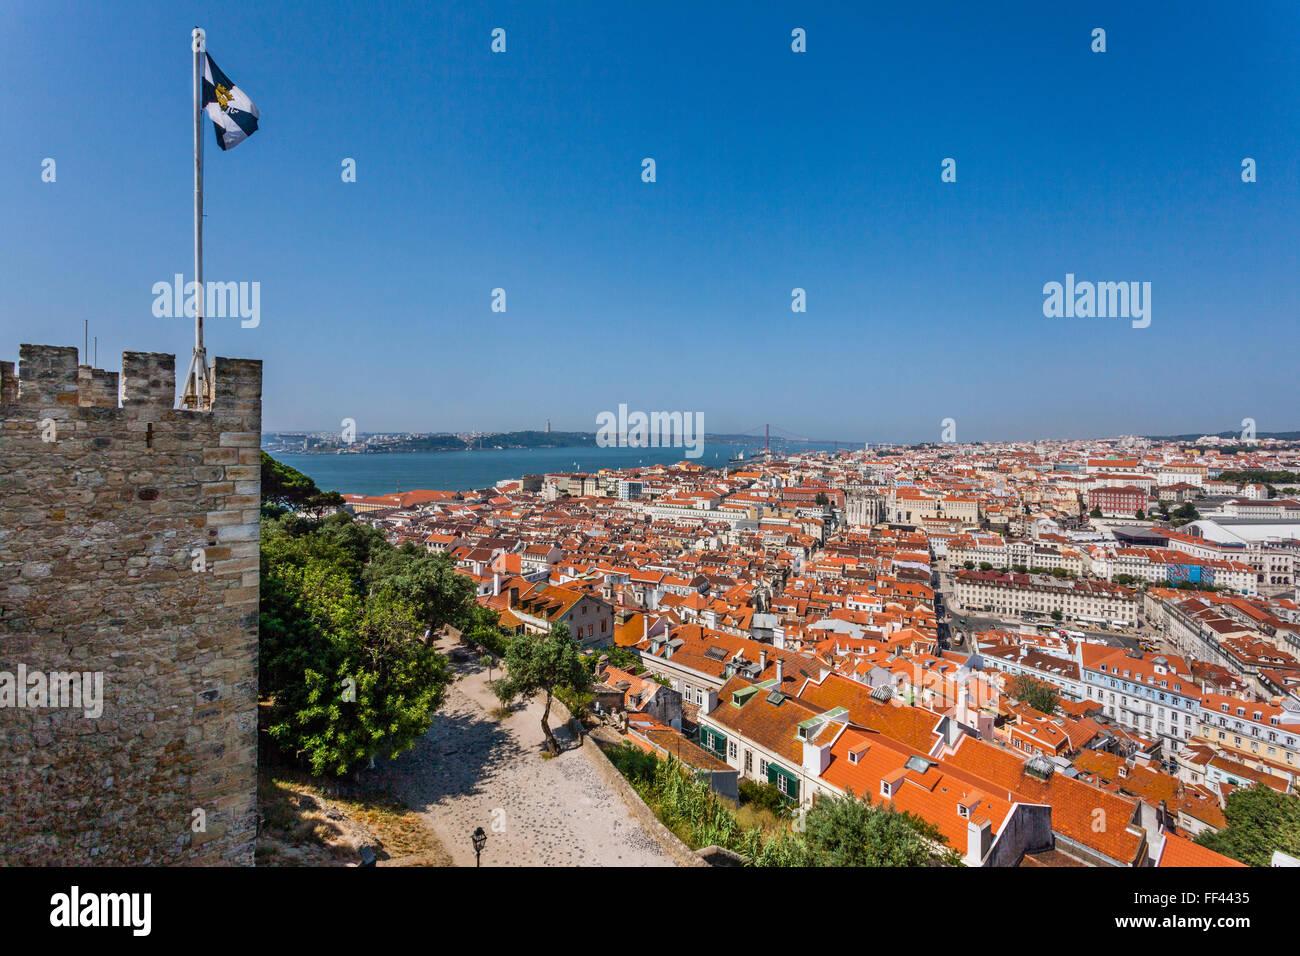 Vue depuis les remparts de Castelo de Sao Jorge, le Château Saint-Georges, Lisbonne, Portugal Banque D'Images